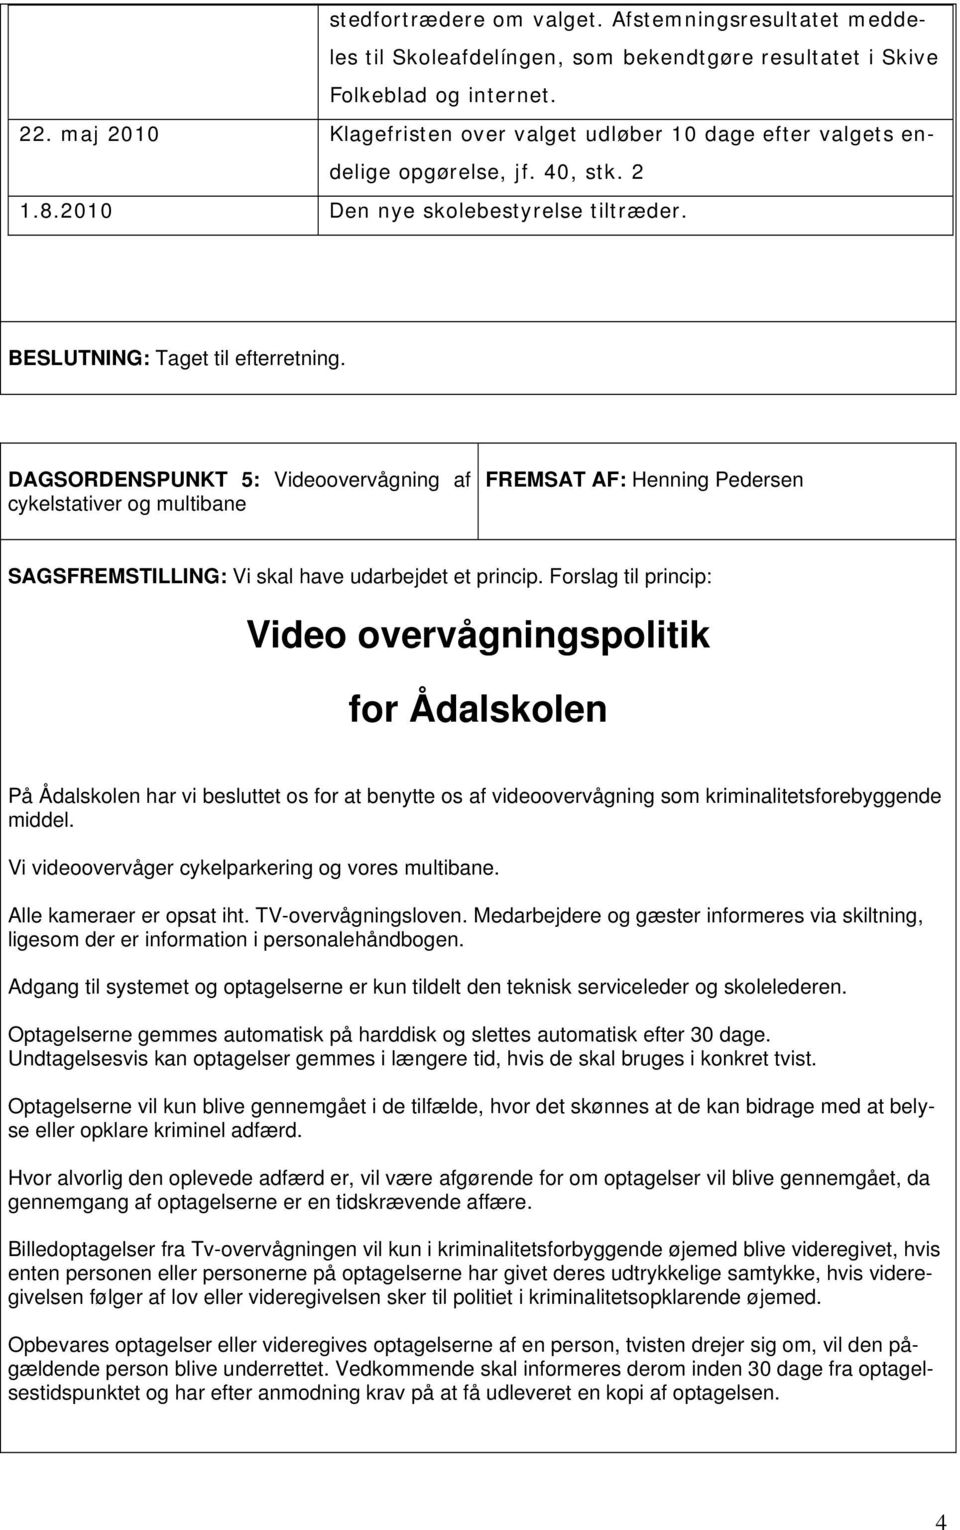 DAGSORDENSPUNKT 5: Videoovervågning af cykelstativer og multibane FREMSAT AF: Henning Pedersen SAGSFREMSTILLING: Vi skal have udarbejdet et princip.